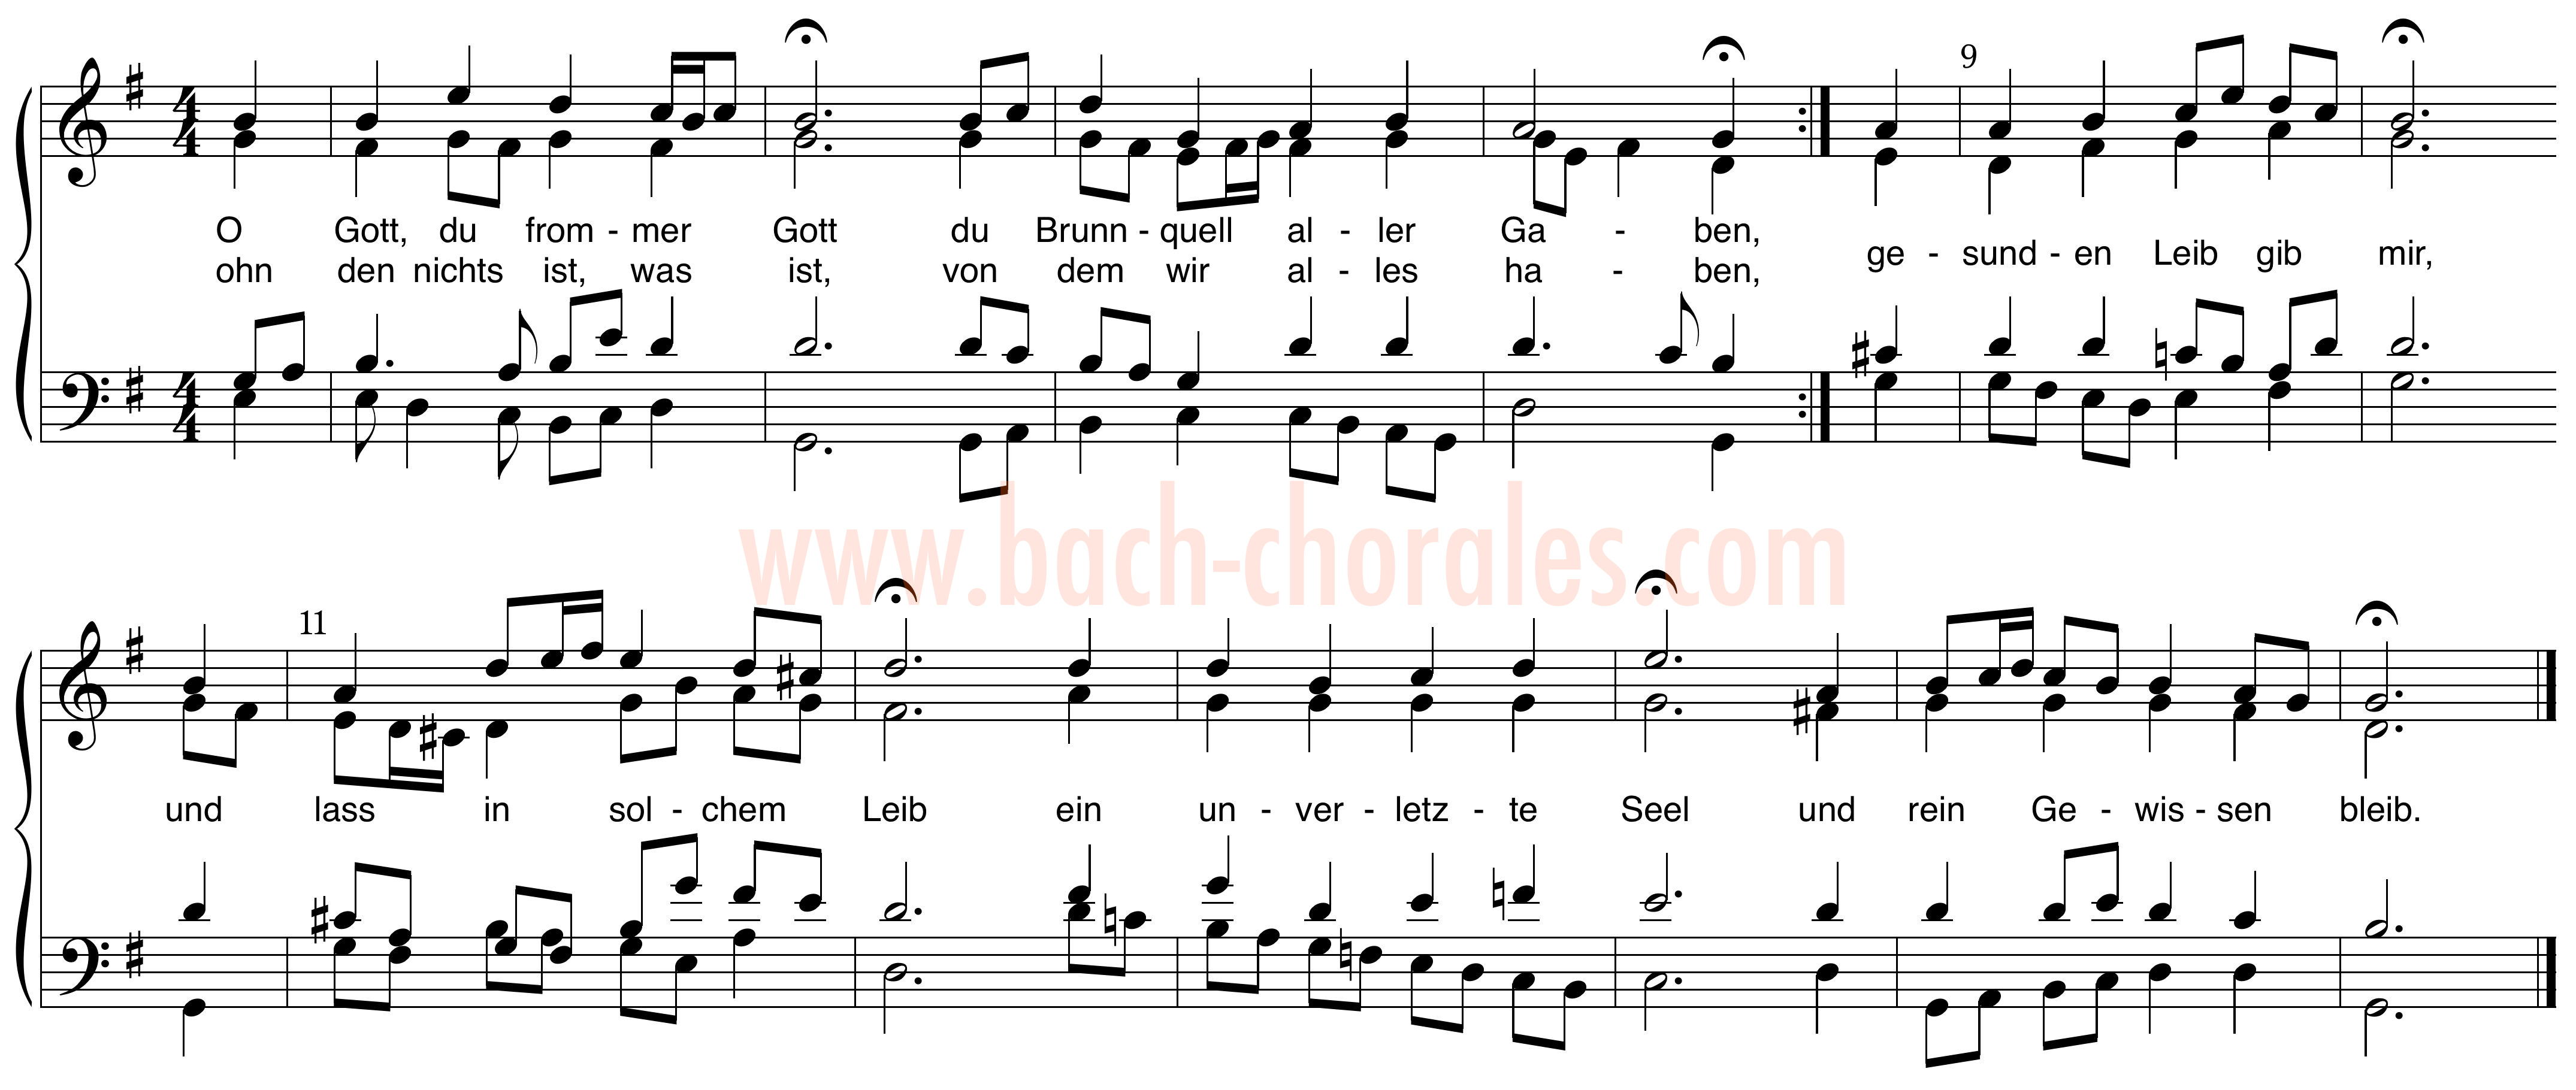 notenbeeld BWV 399 op https://www.bach-chorales.com/